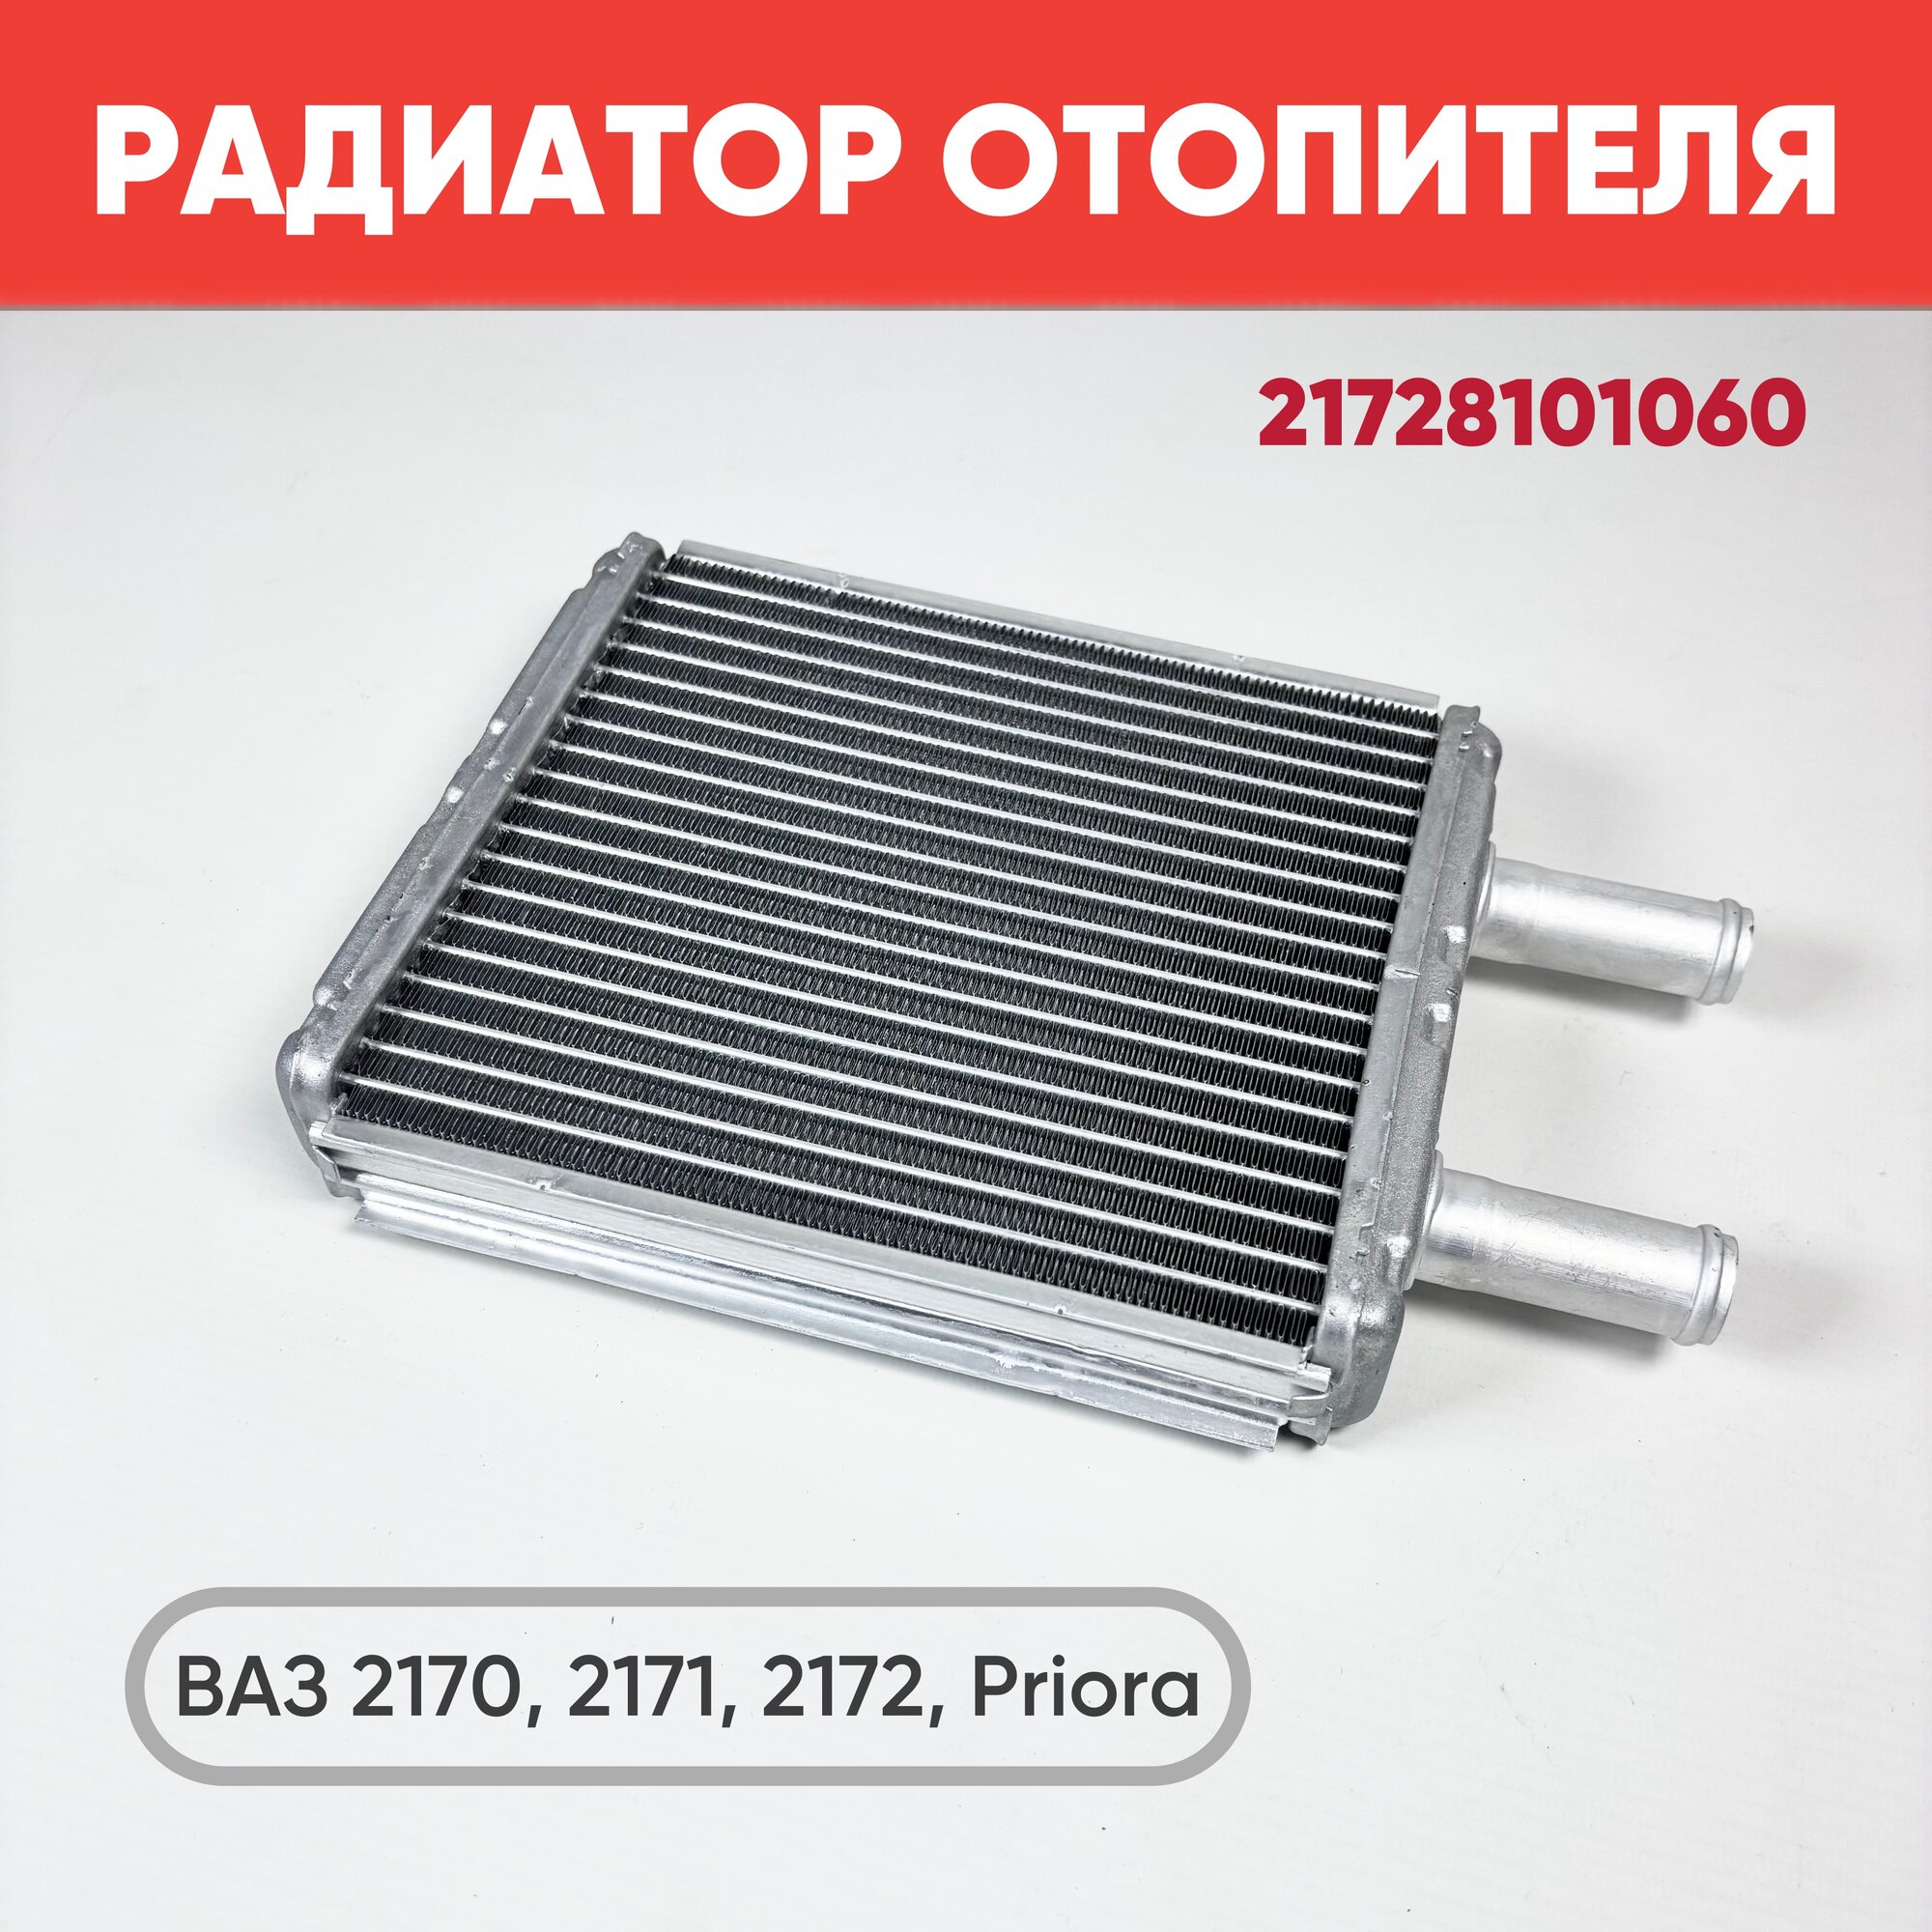 Радиатор отопителя ВАЗ 2170-2172 с кондиционером Halla арт. 21728101060 / Радиатор печки Приора с кондиц.